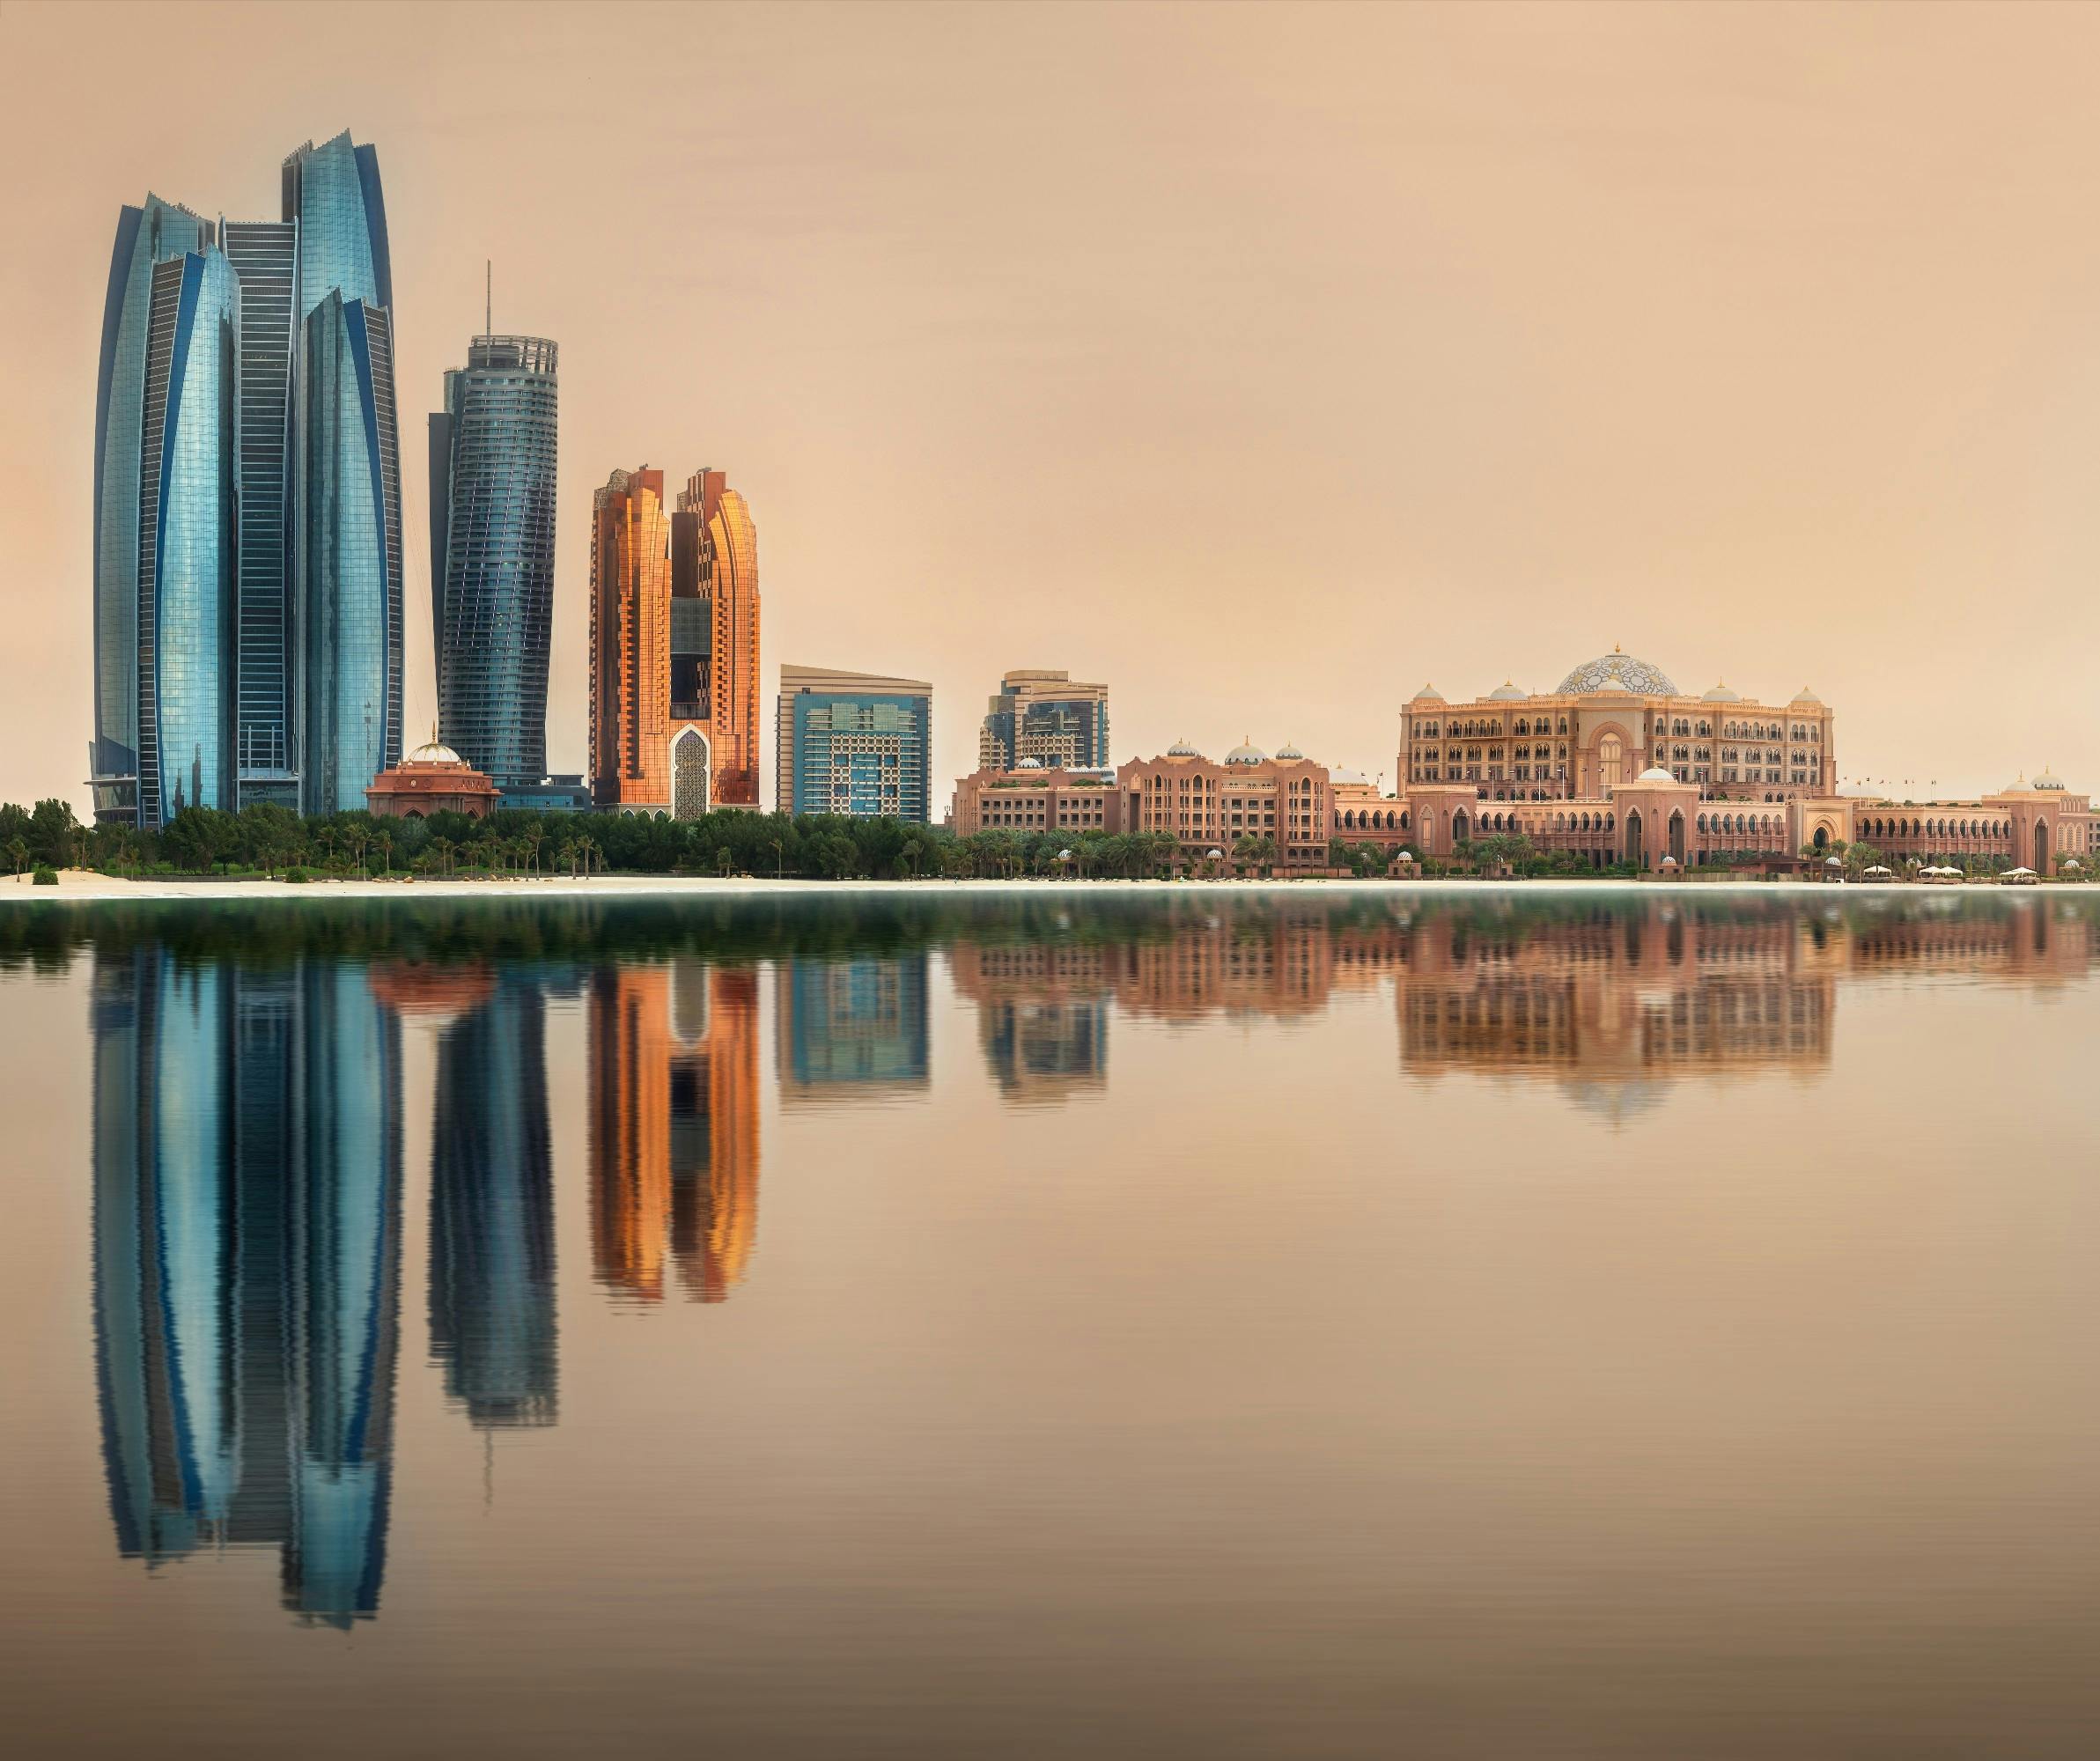 Stadtrundfahrt durch Abu Dhabi mit Abholservice von Abu Dhabi